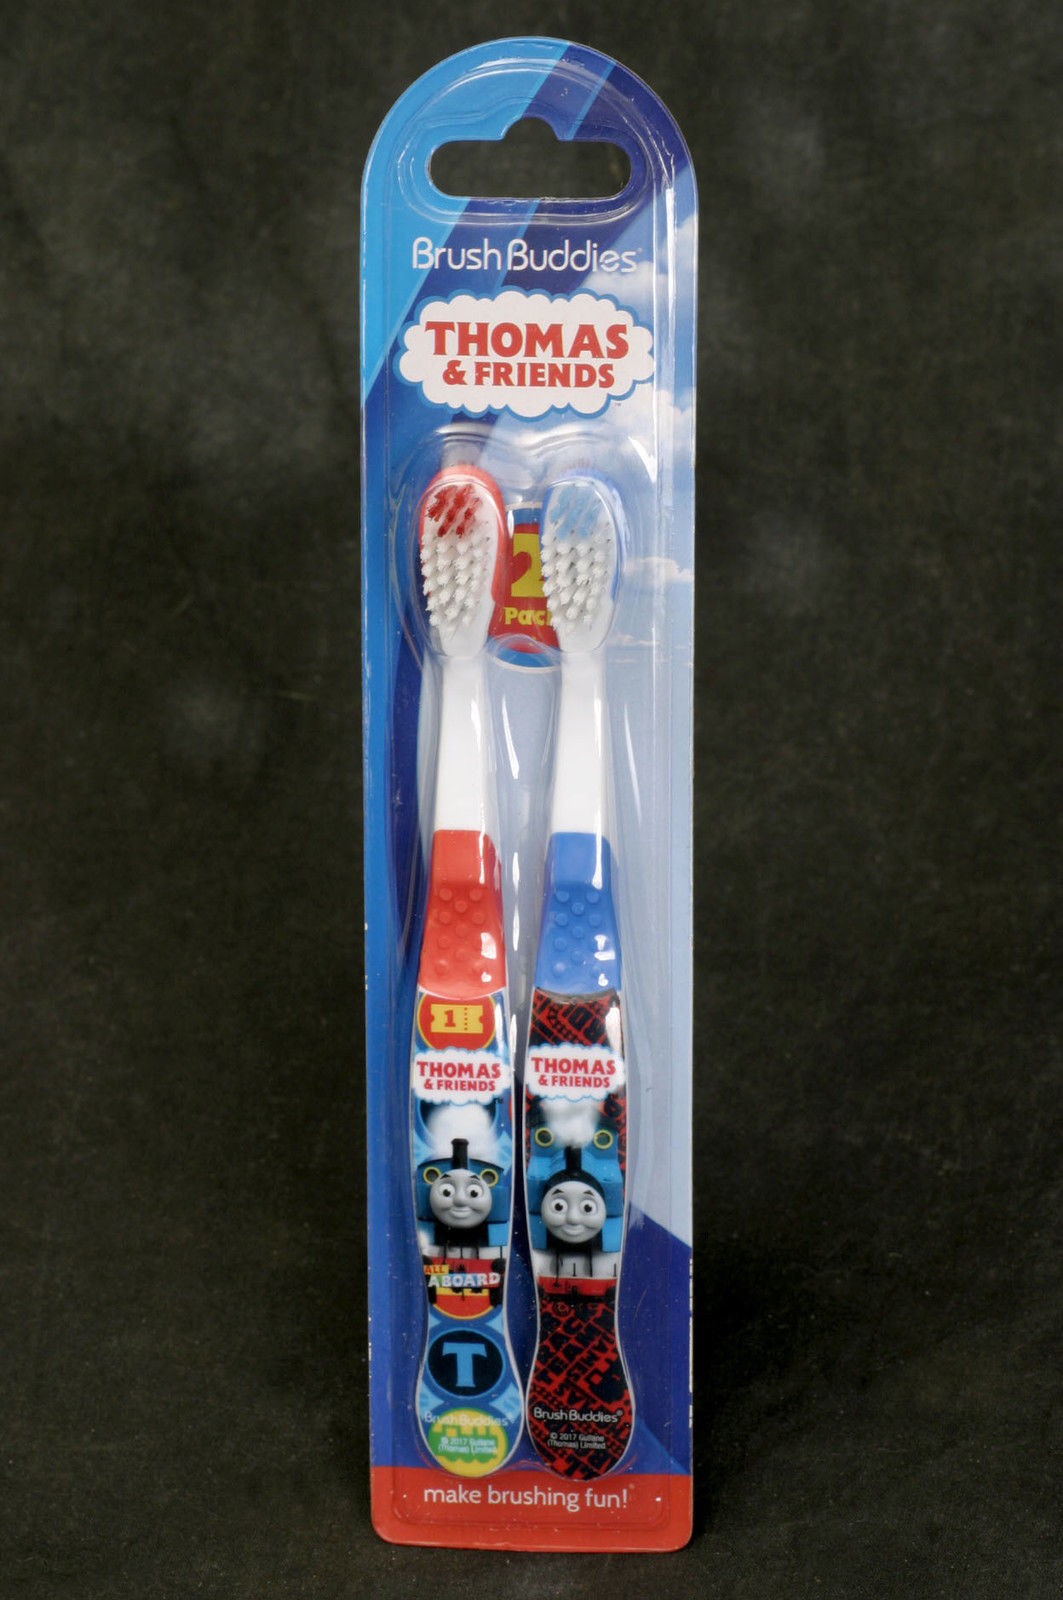 Thomas & Friends Brush Buddies Toothbrush 2 Pack - $6.89